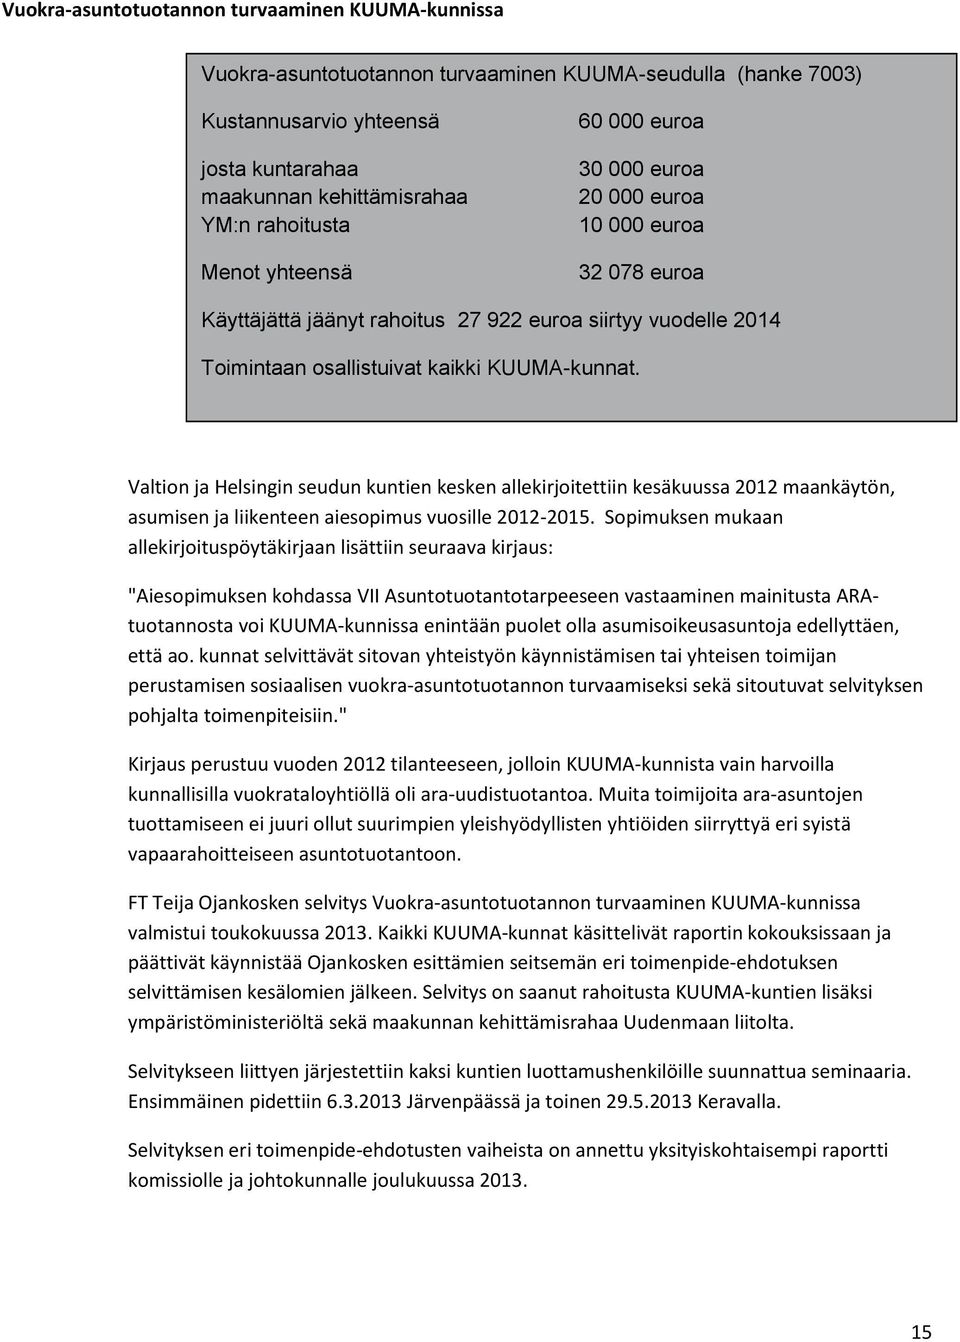 Valtion ja Helsingin seudun kuntien kesken allekirjoitettiin kesäkuussa 2012 maankäytön, asumisen ja liikenteen aiesopimus vuosille 2012-2015.